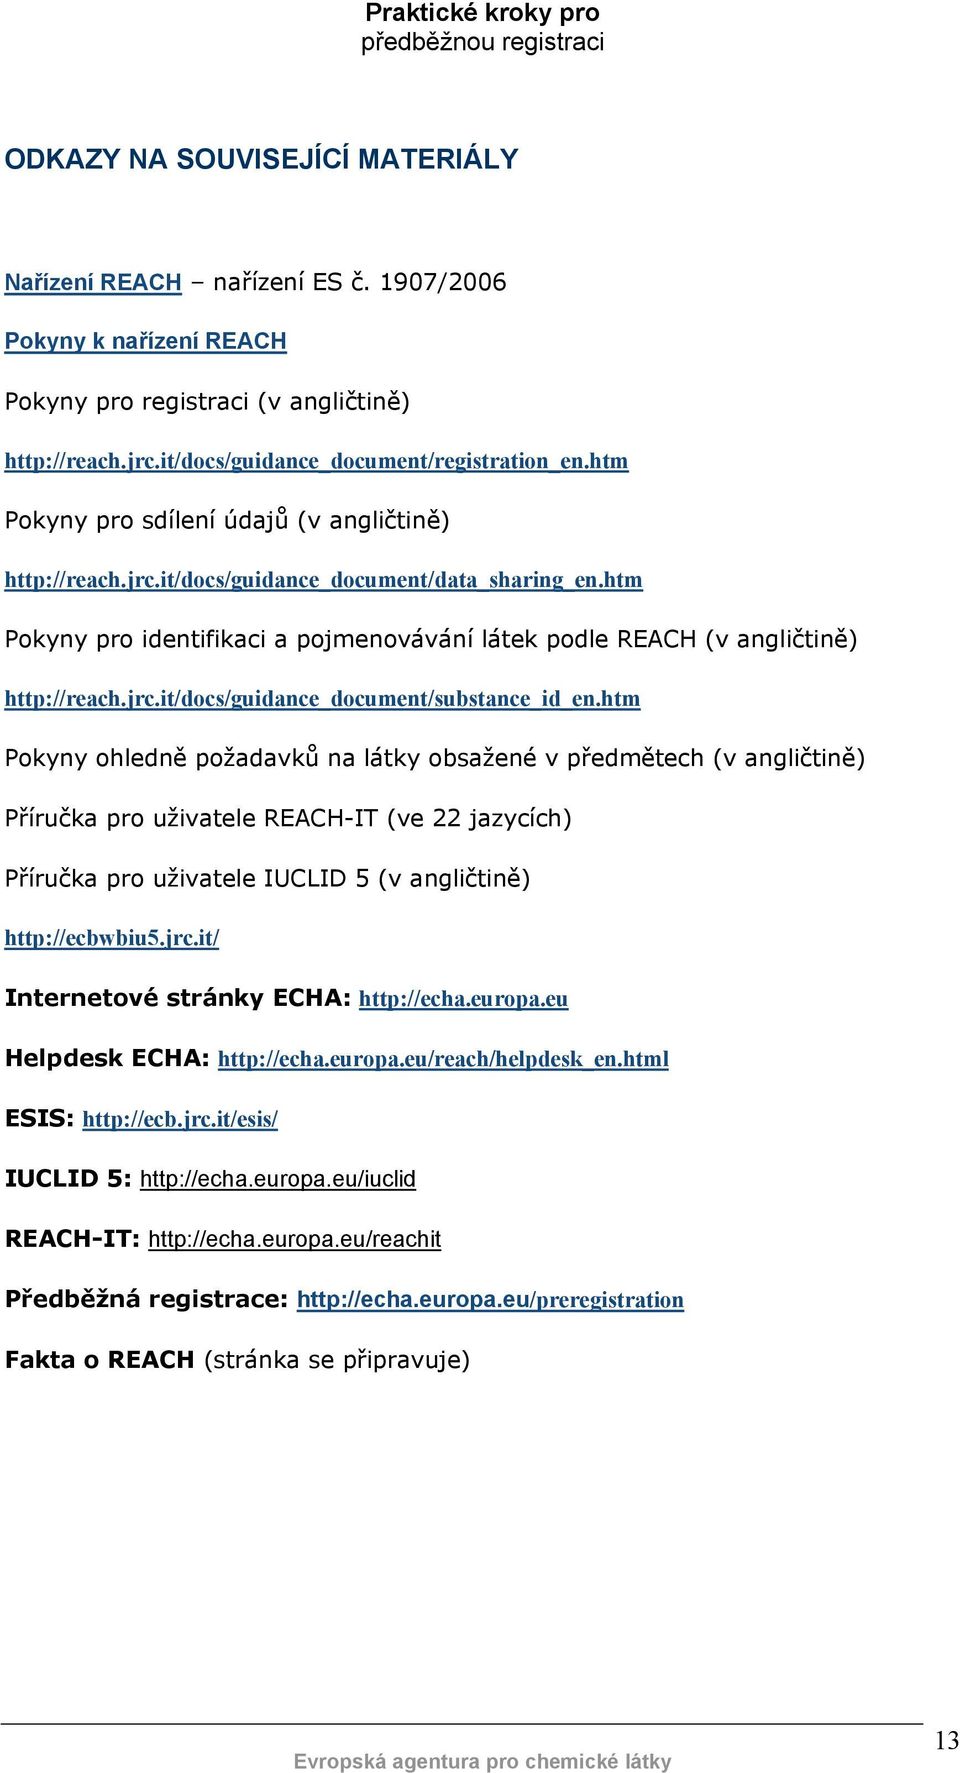 htm Pokyny ohledně požadavků na látky obsažené v předmětech (v angličtině) Příručka pro uživatele REACH-IT (ve 22 jazycích) Příručka pro uživatele IUCLID 5 (v angličtině) http://ecbwbiu5.jrc.